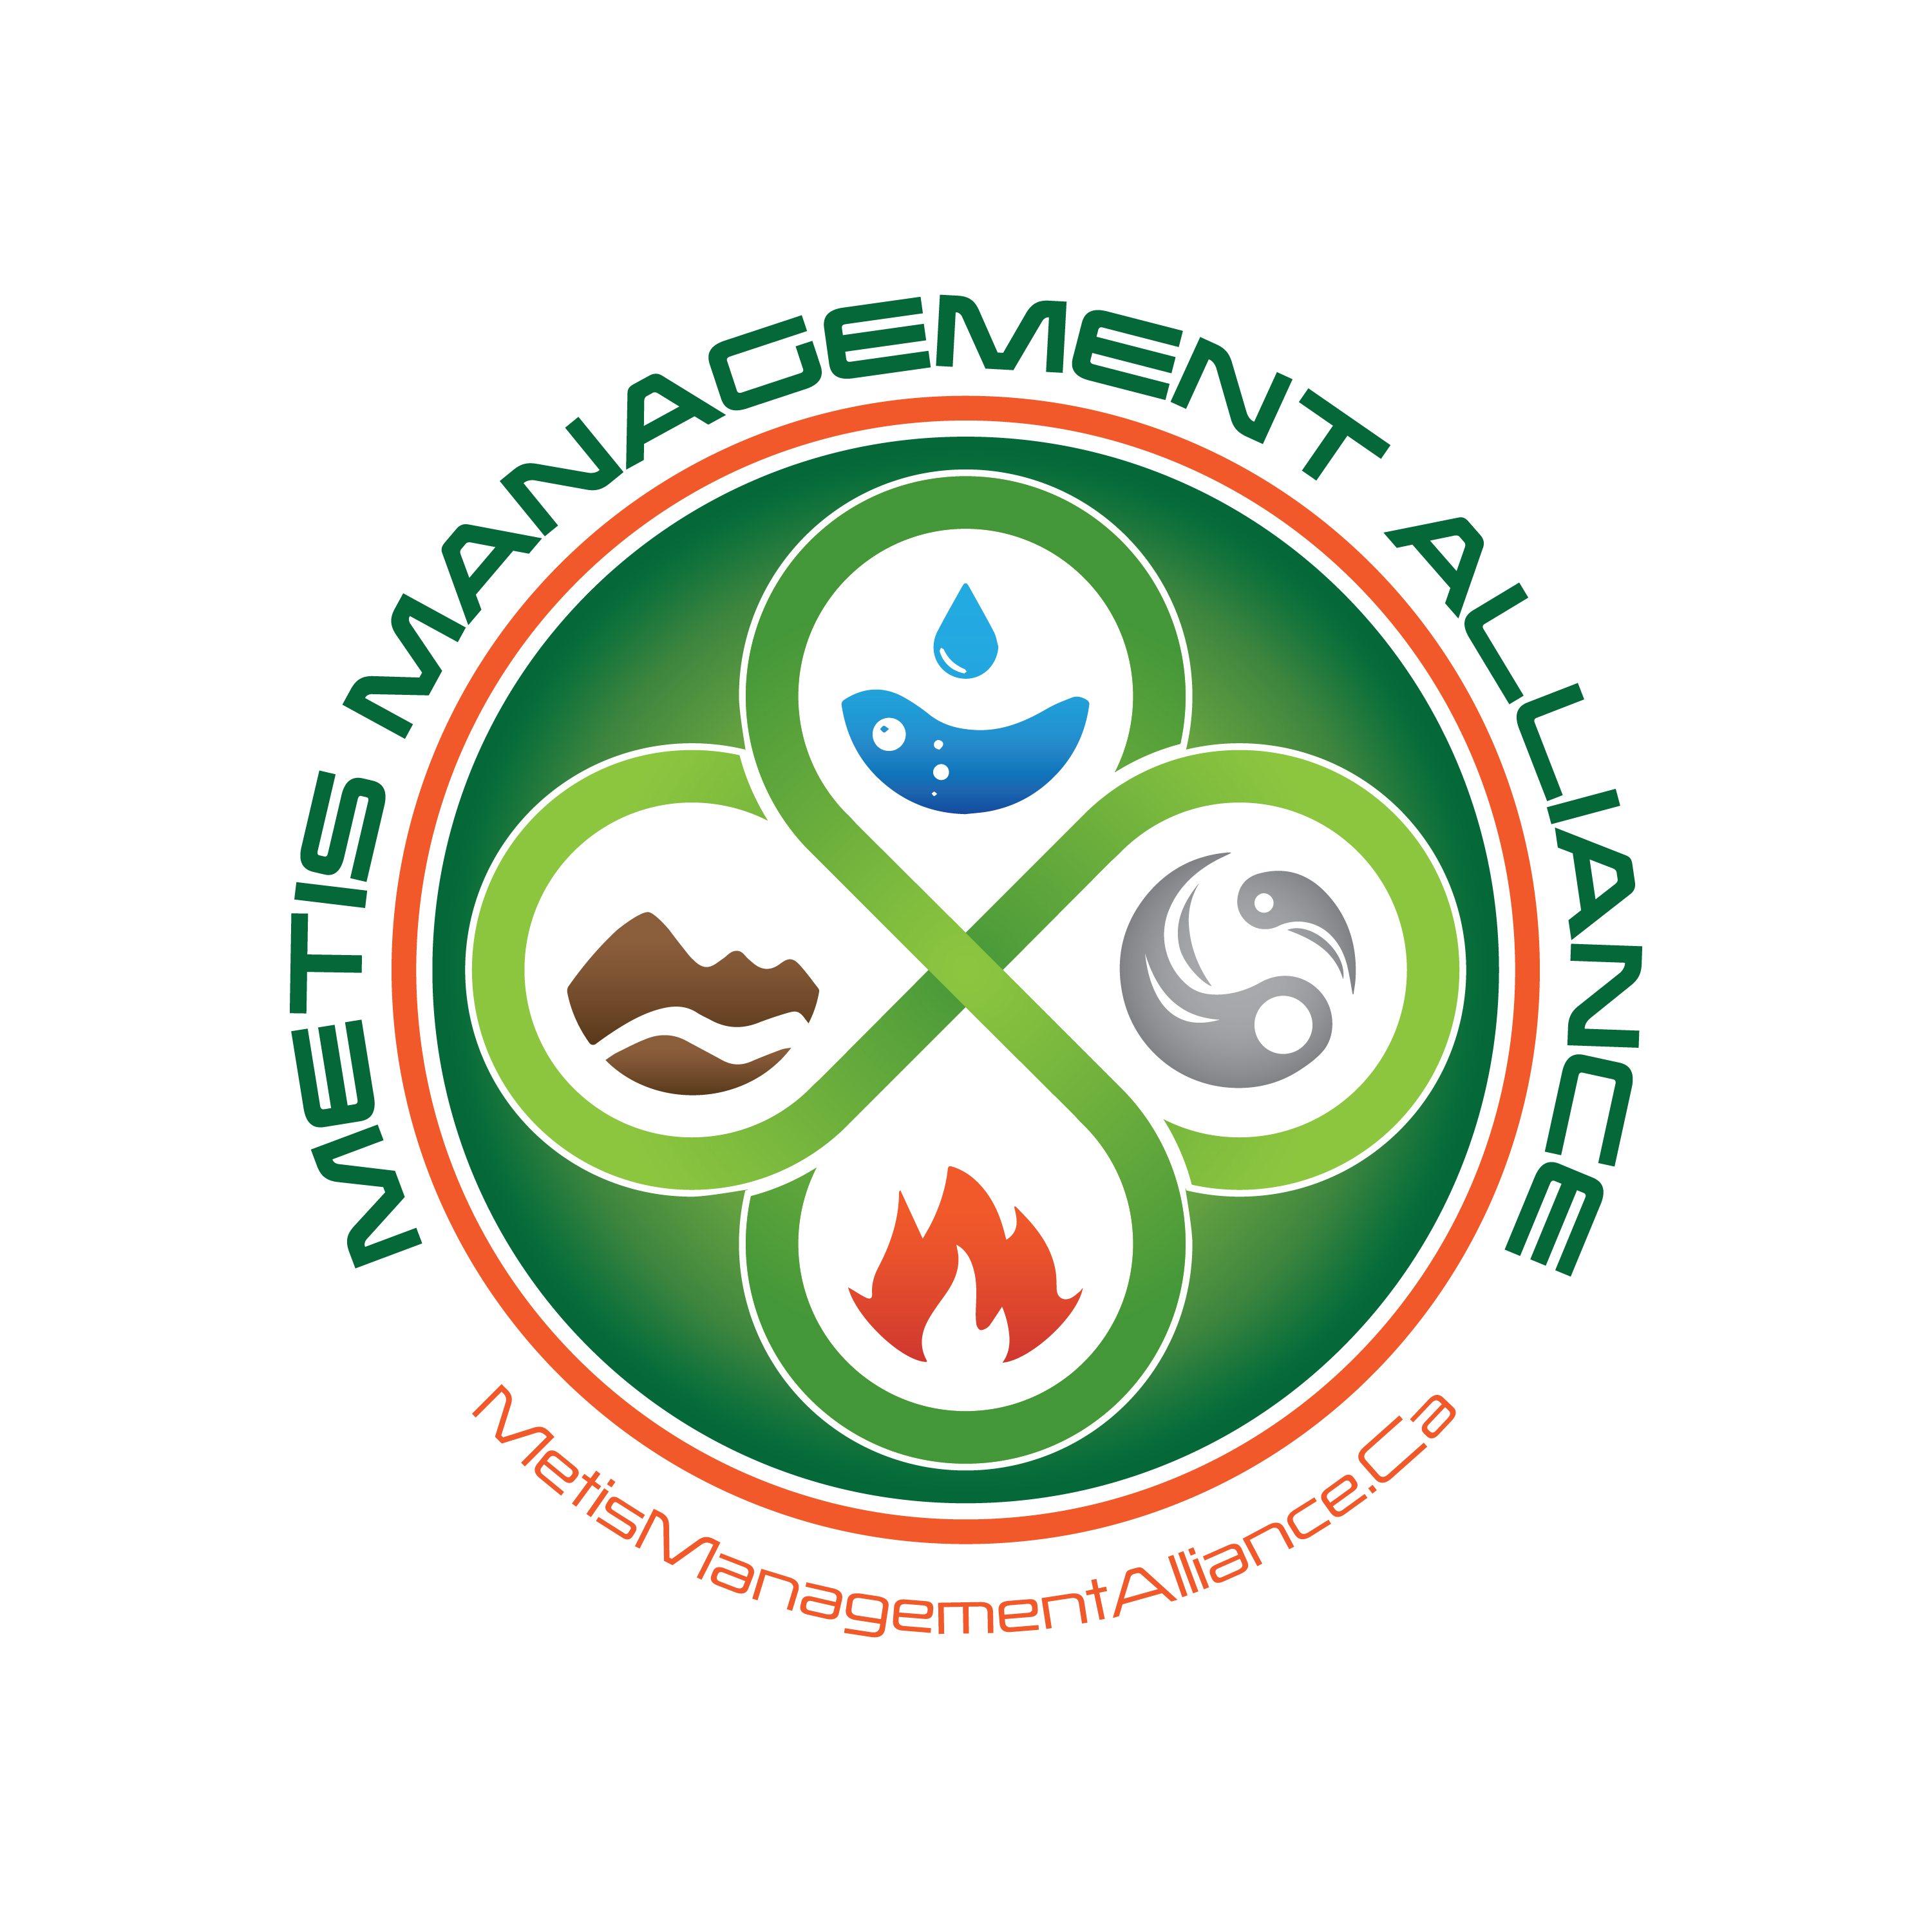 Metis Management Alliance Inc